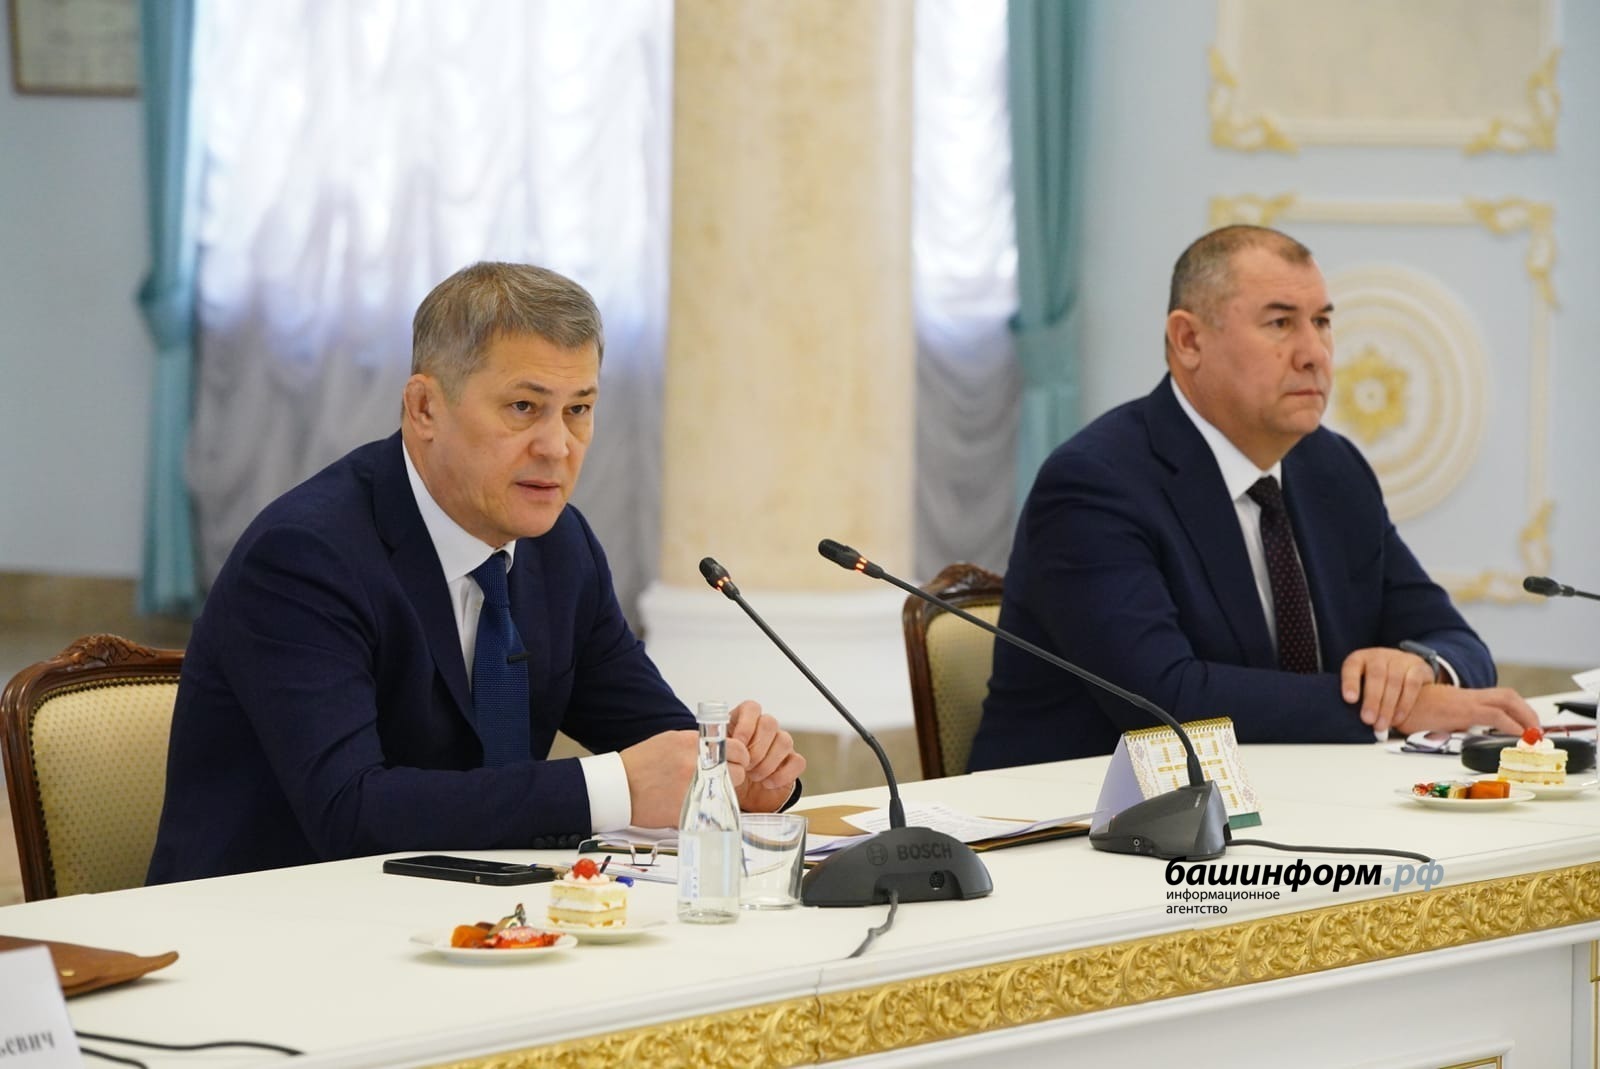 Глава региона Радий Хабиров отметил, что Башкортостан всегда был  родиной героев